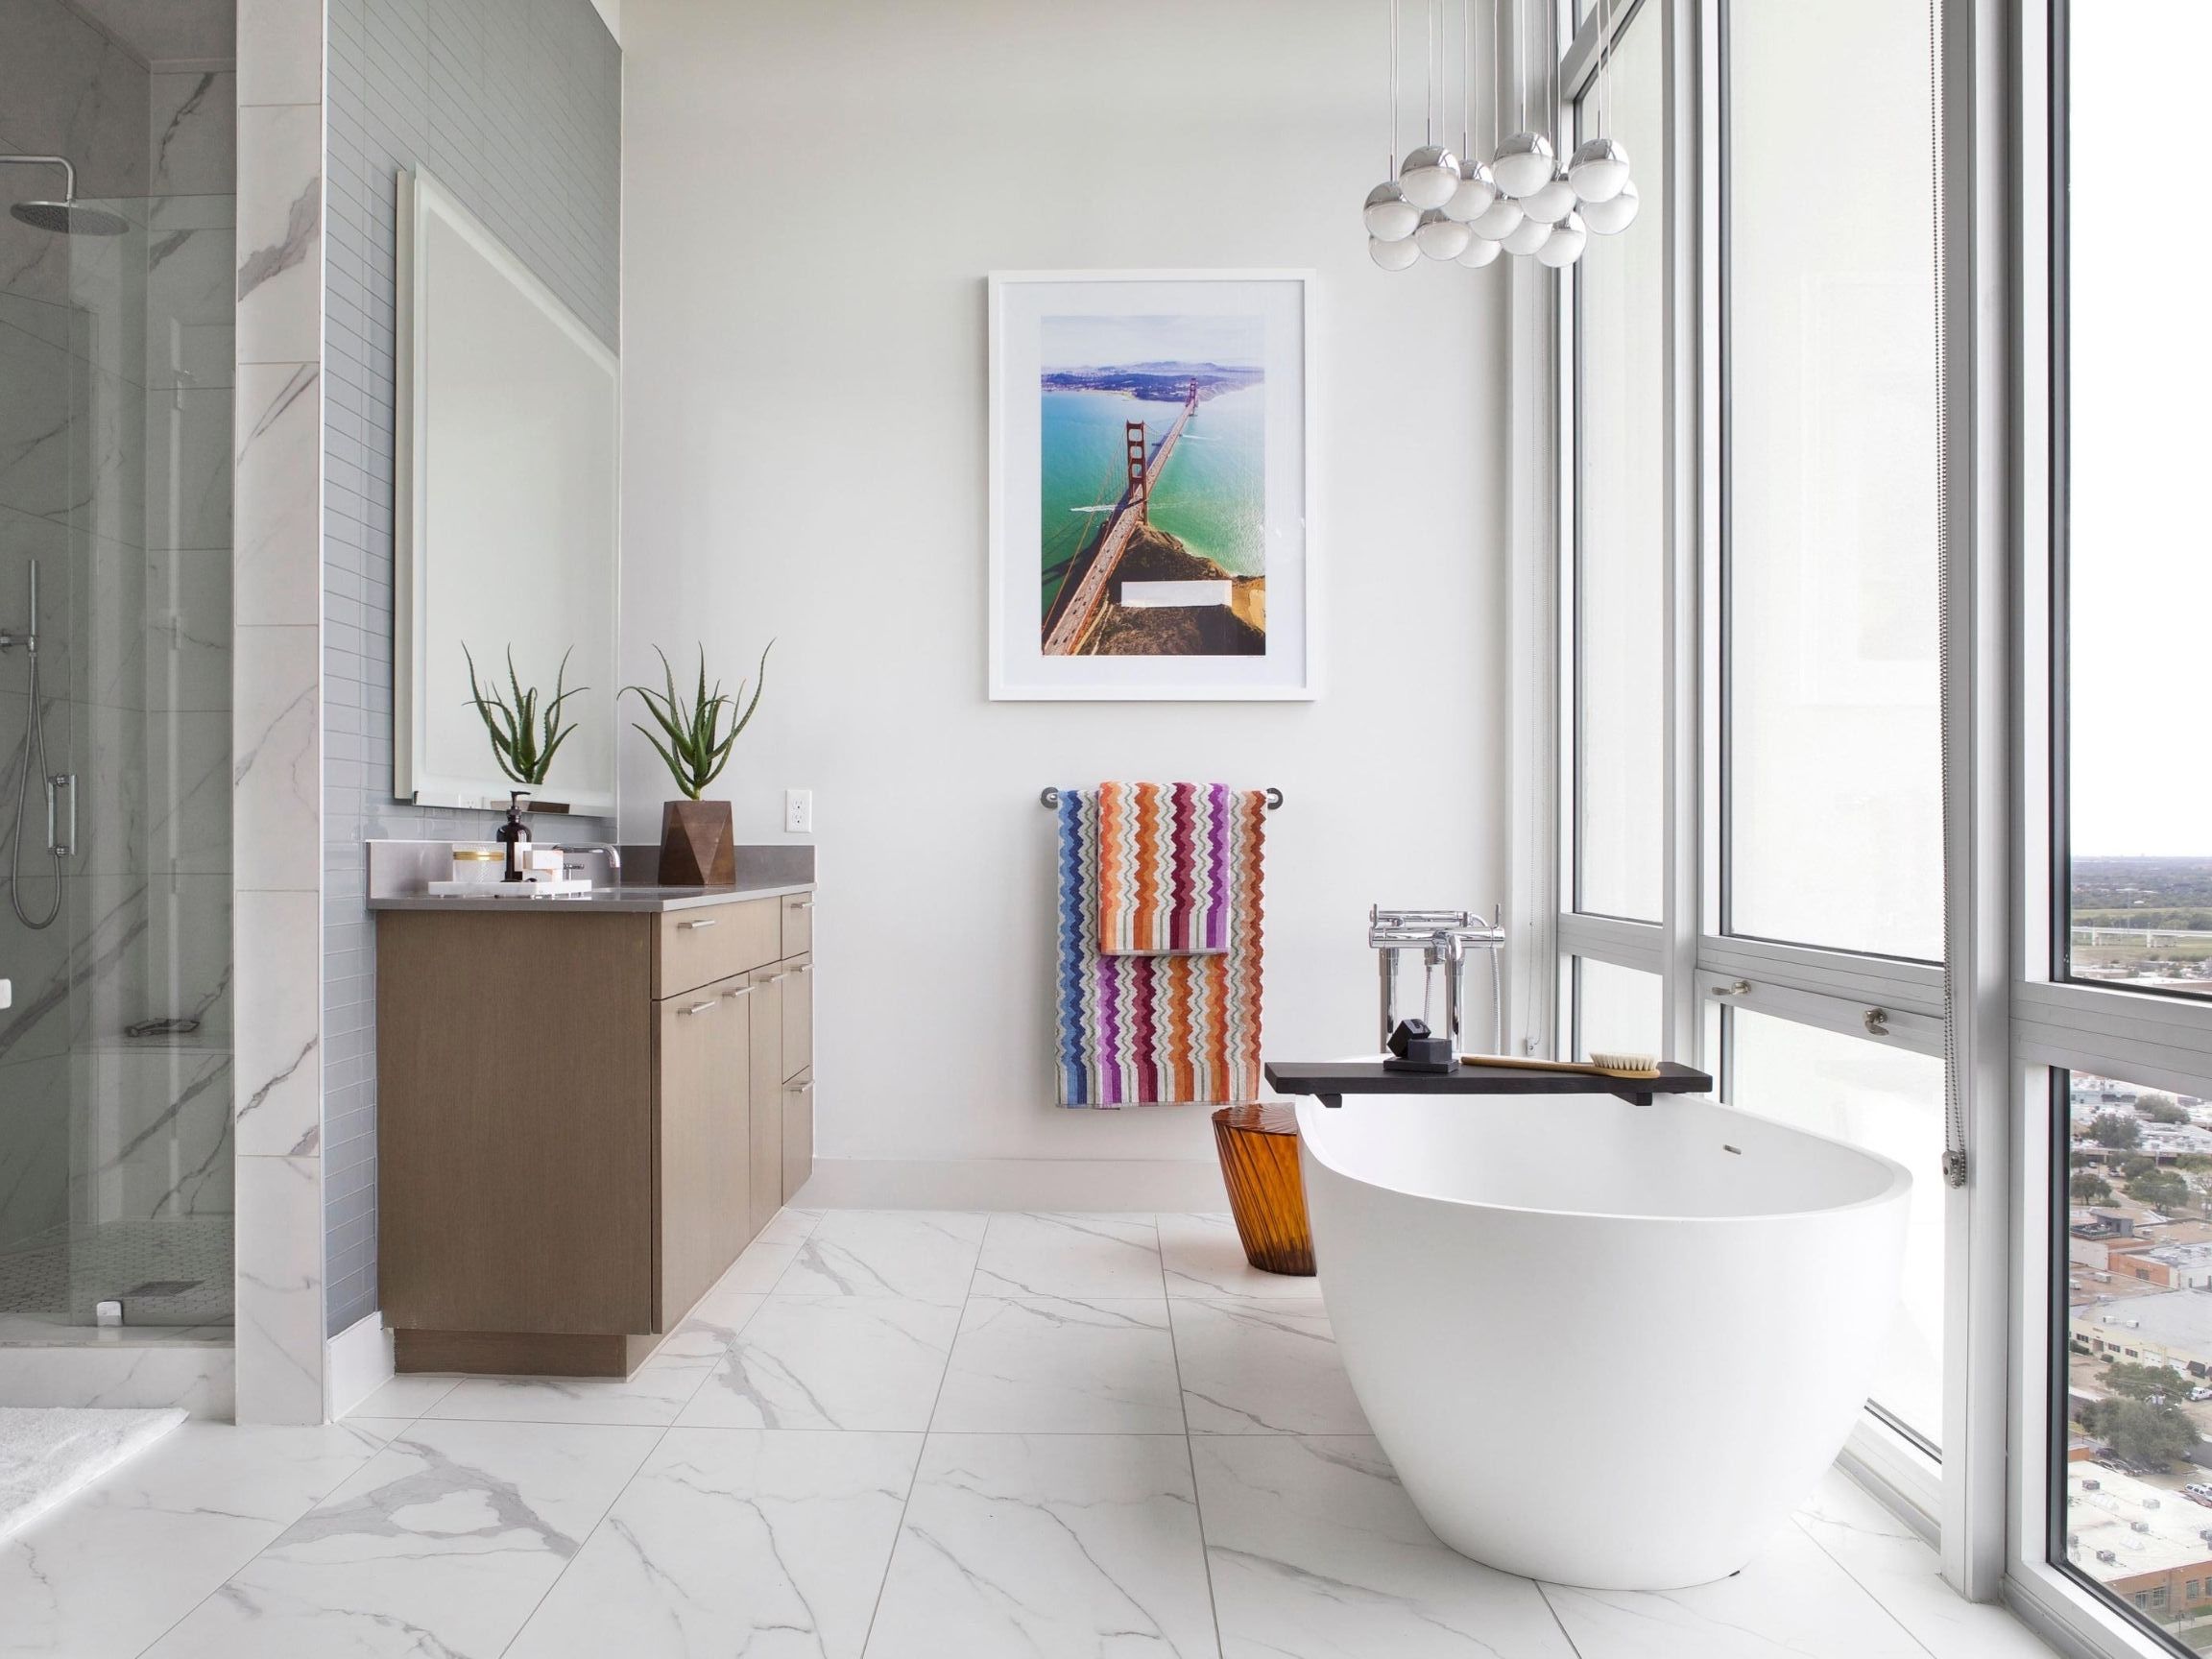 Top 5 Bathroom Design Trends